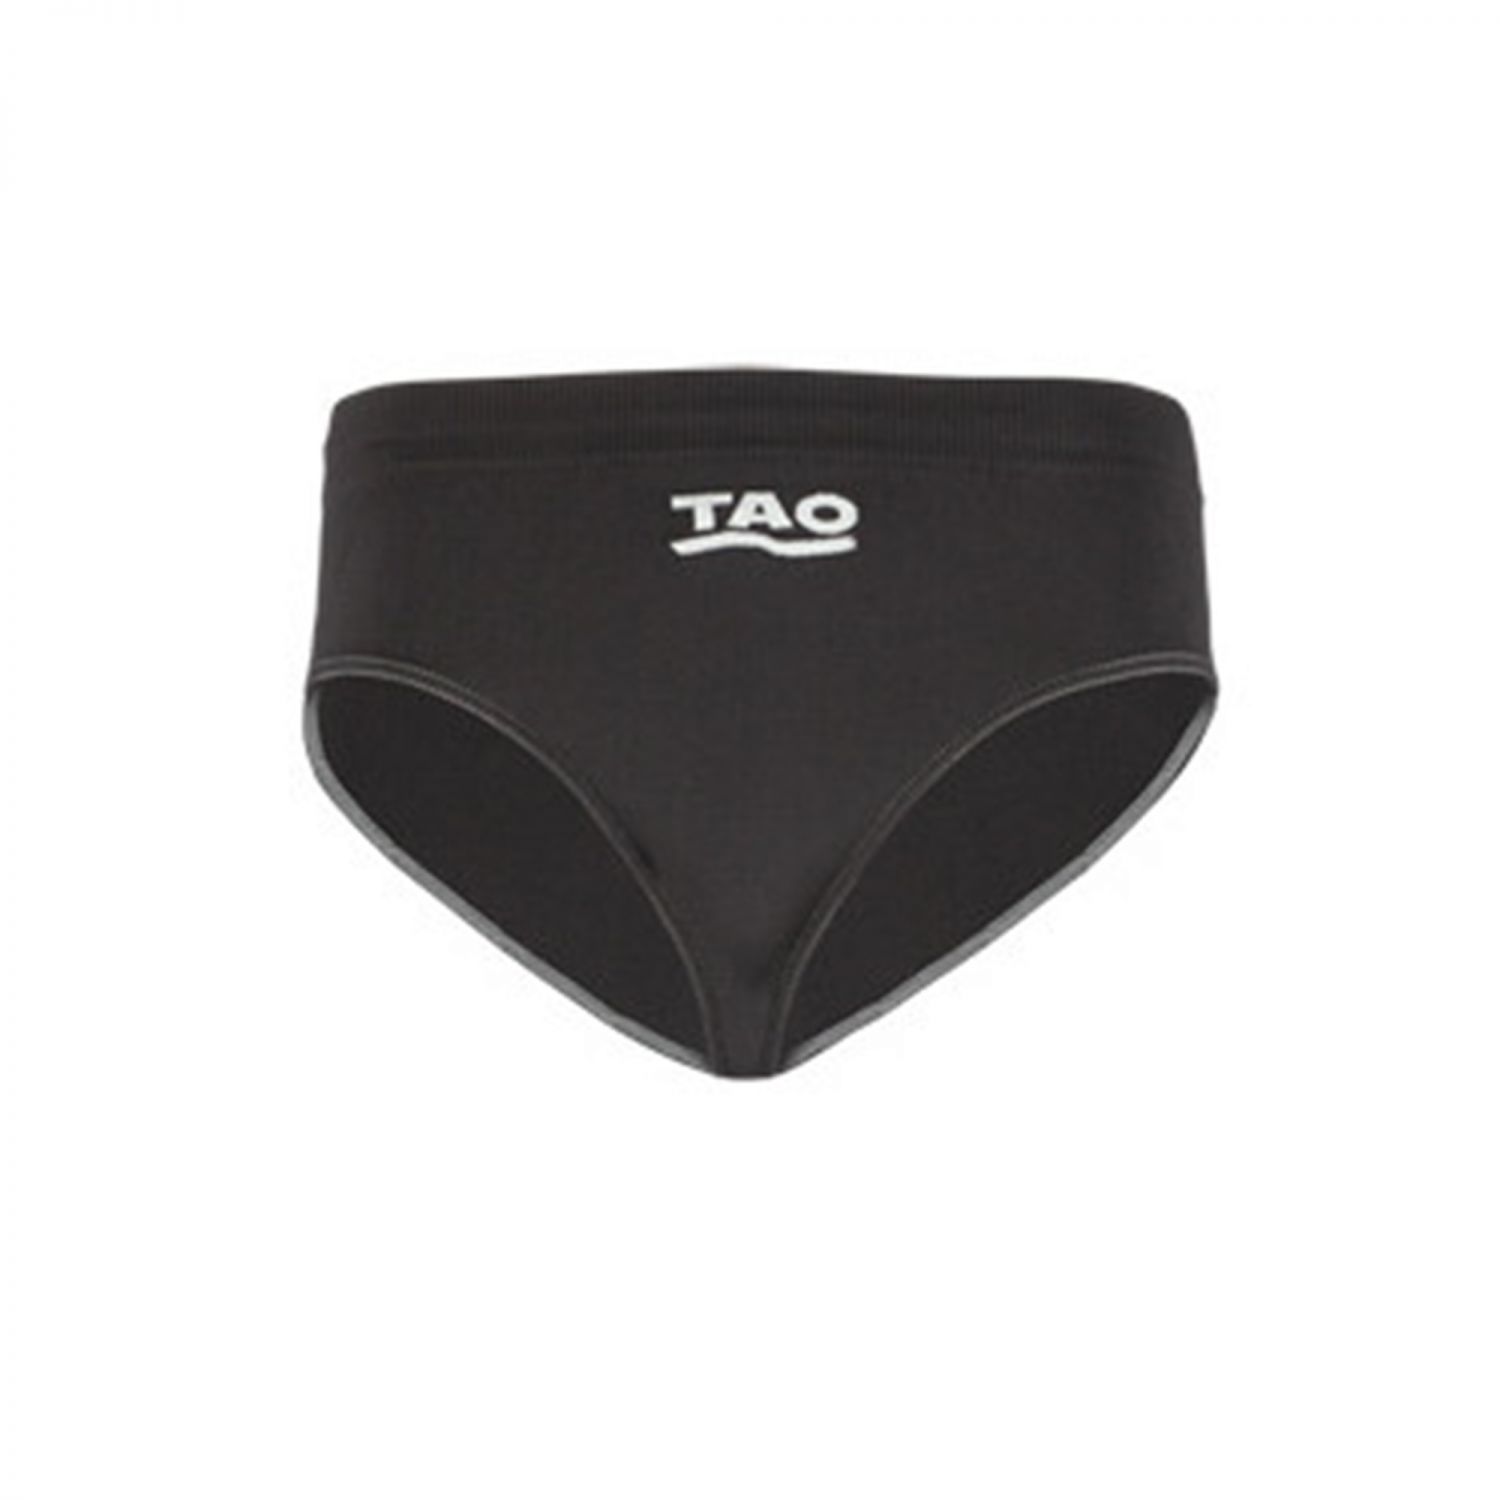 TAO und SLIP Nahtloser | Funktionsslip geruchsneutralisiernder Sportswear